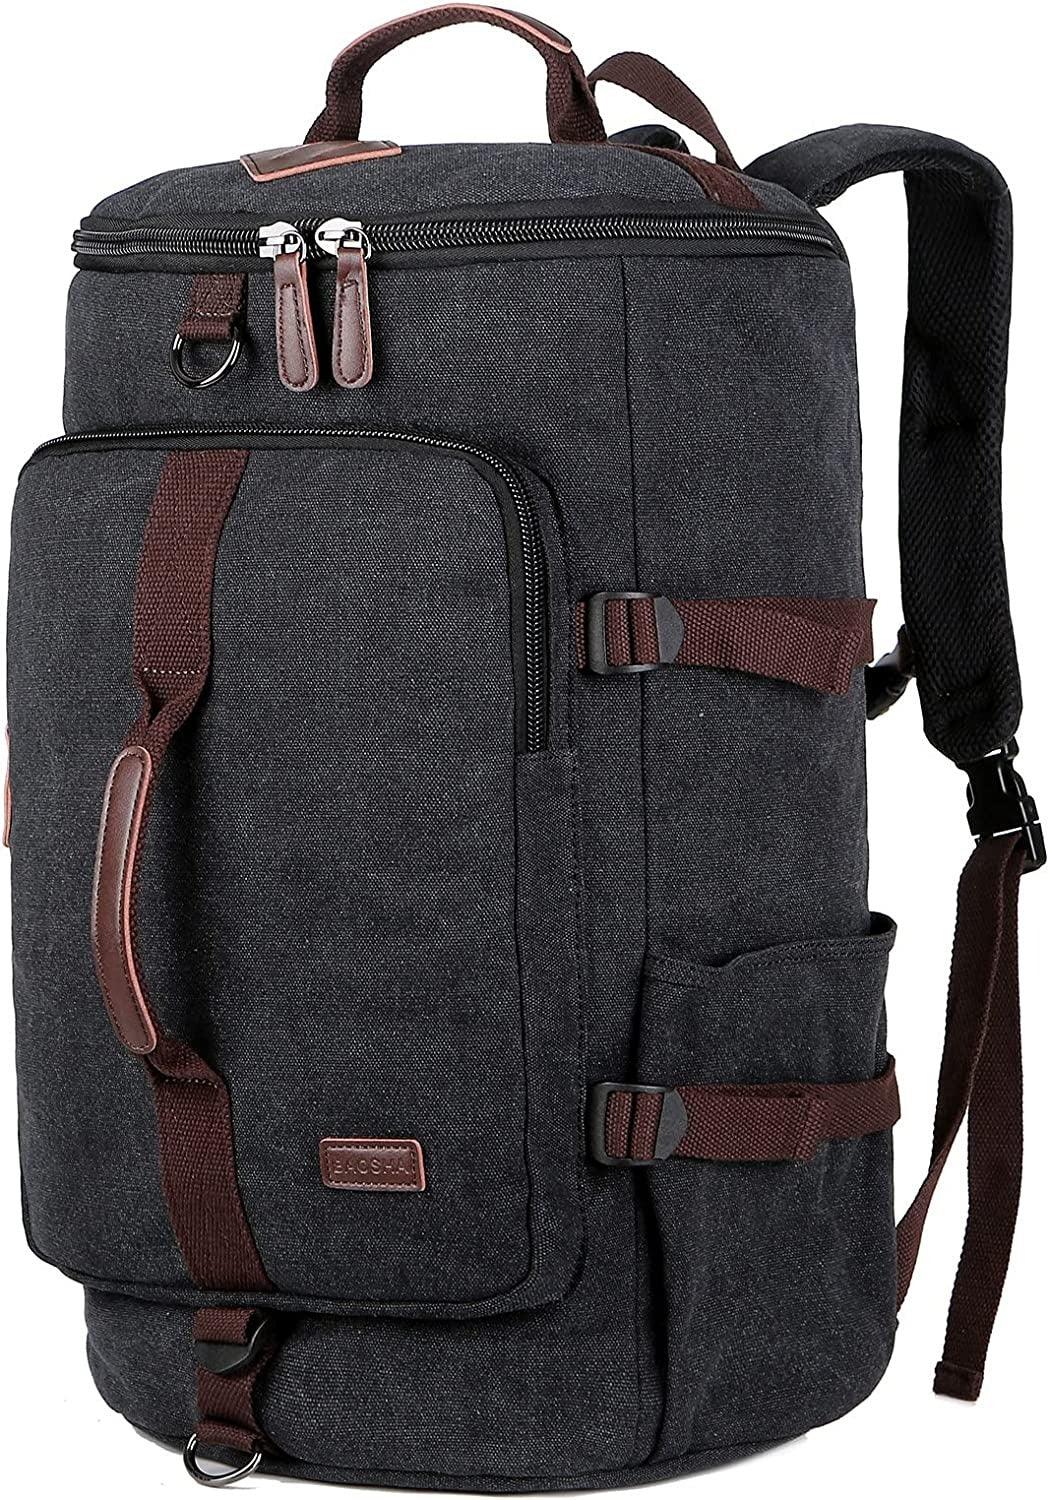 FR Fashion Co. 18" Hybrid Canvas Backpack - FR Fashion Co. 